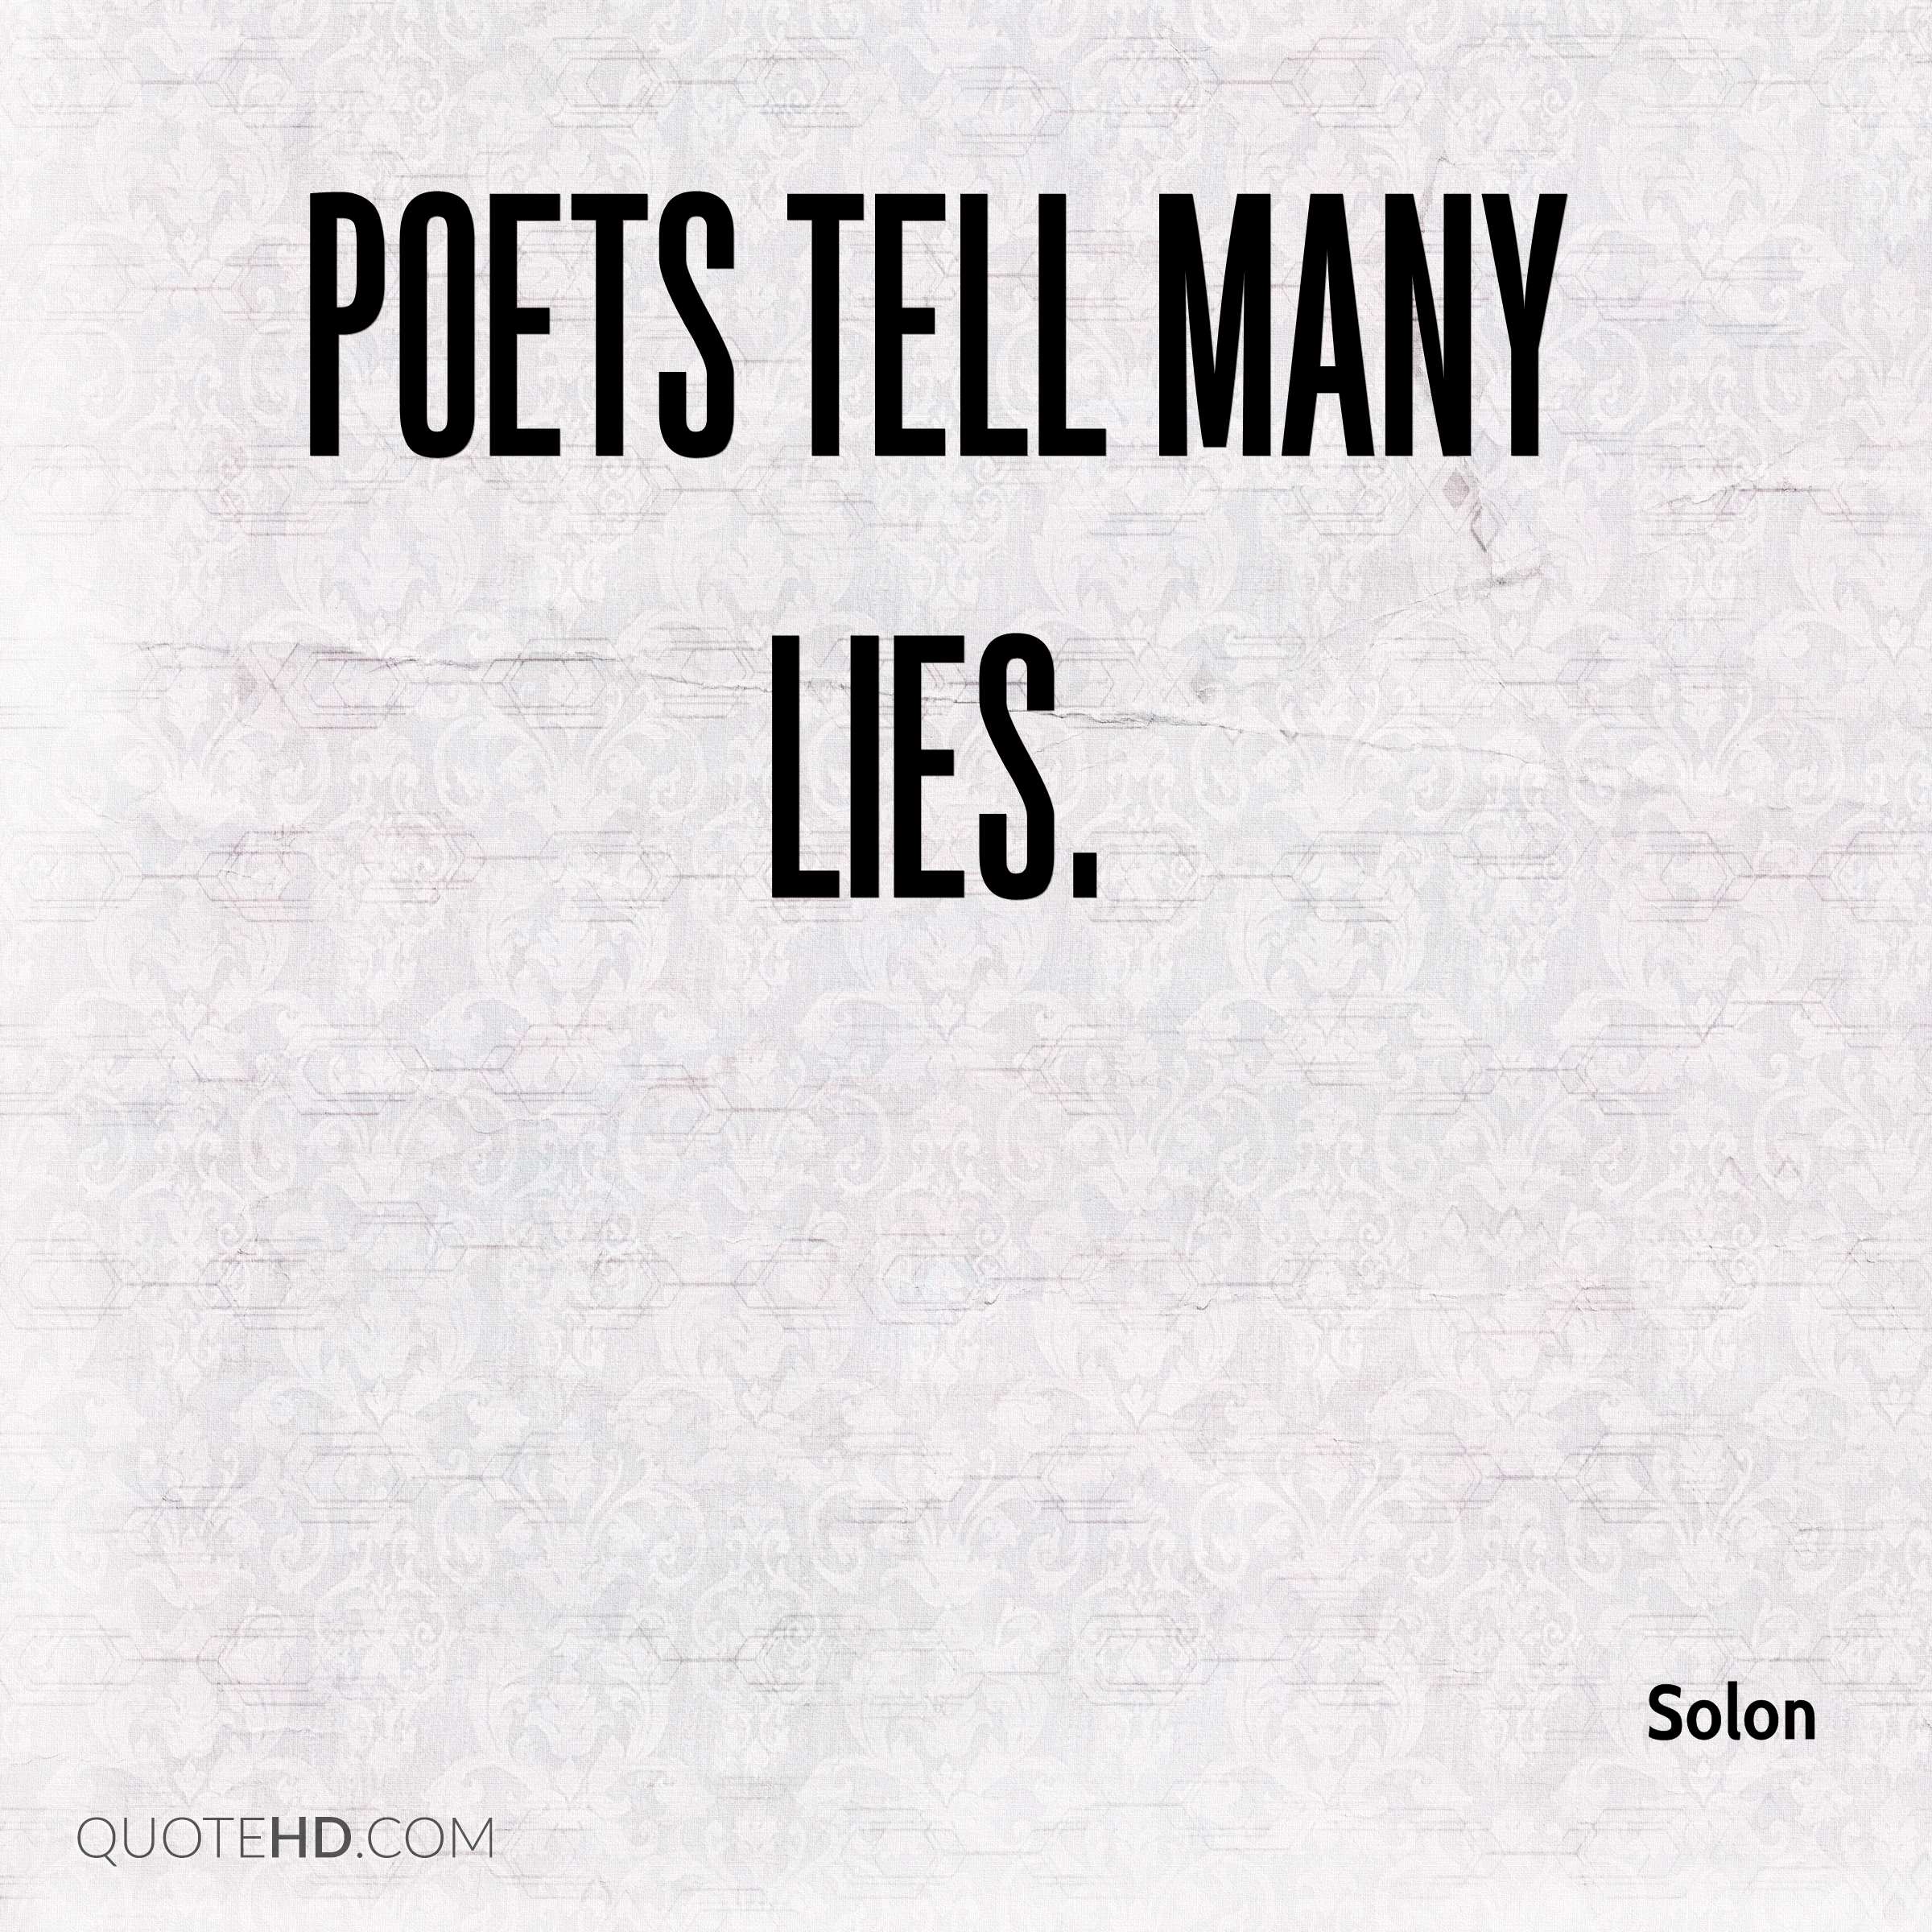 Poets tell many lies. SOlon